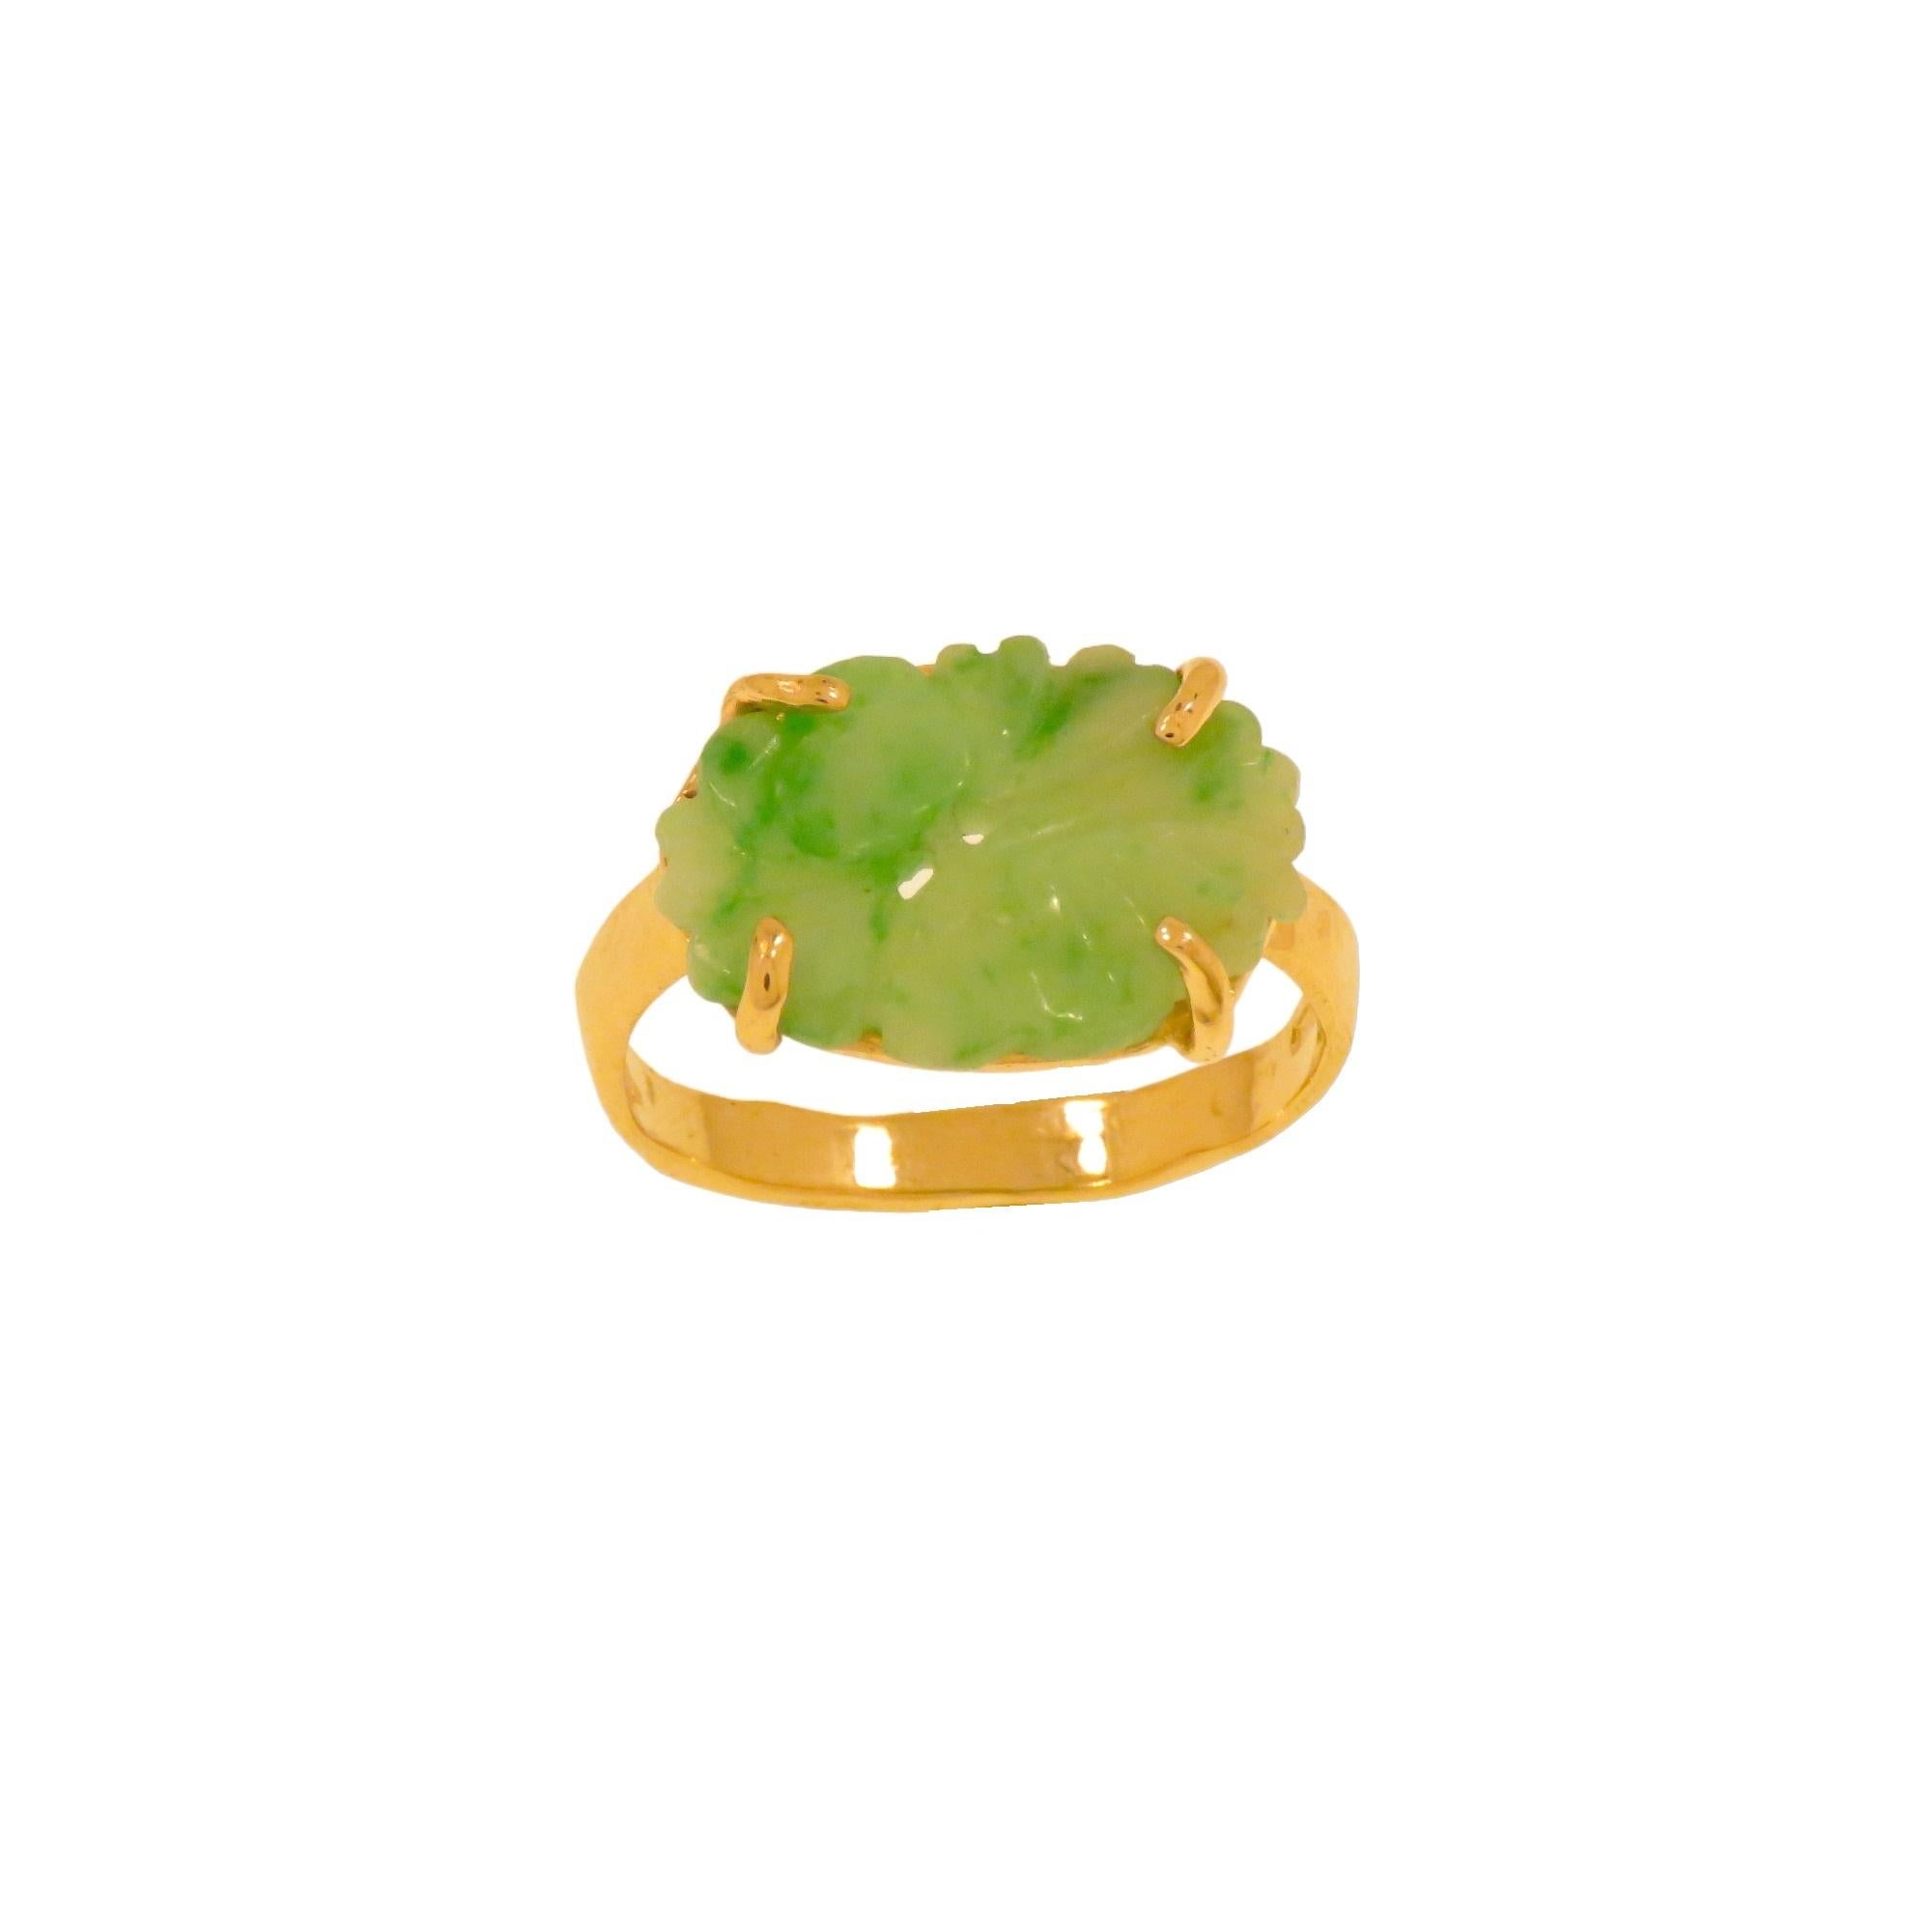 Bague en or rose 9K avec un jade impérial naturel de taille ovale gravé à la main mesurant 16x12 mm / 0.629x0.472. La bague est fabriquée à la main en Italie avec une monture formée d'un anneau martelé et d'une monture de jade à quatre branches. La